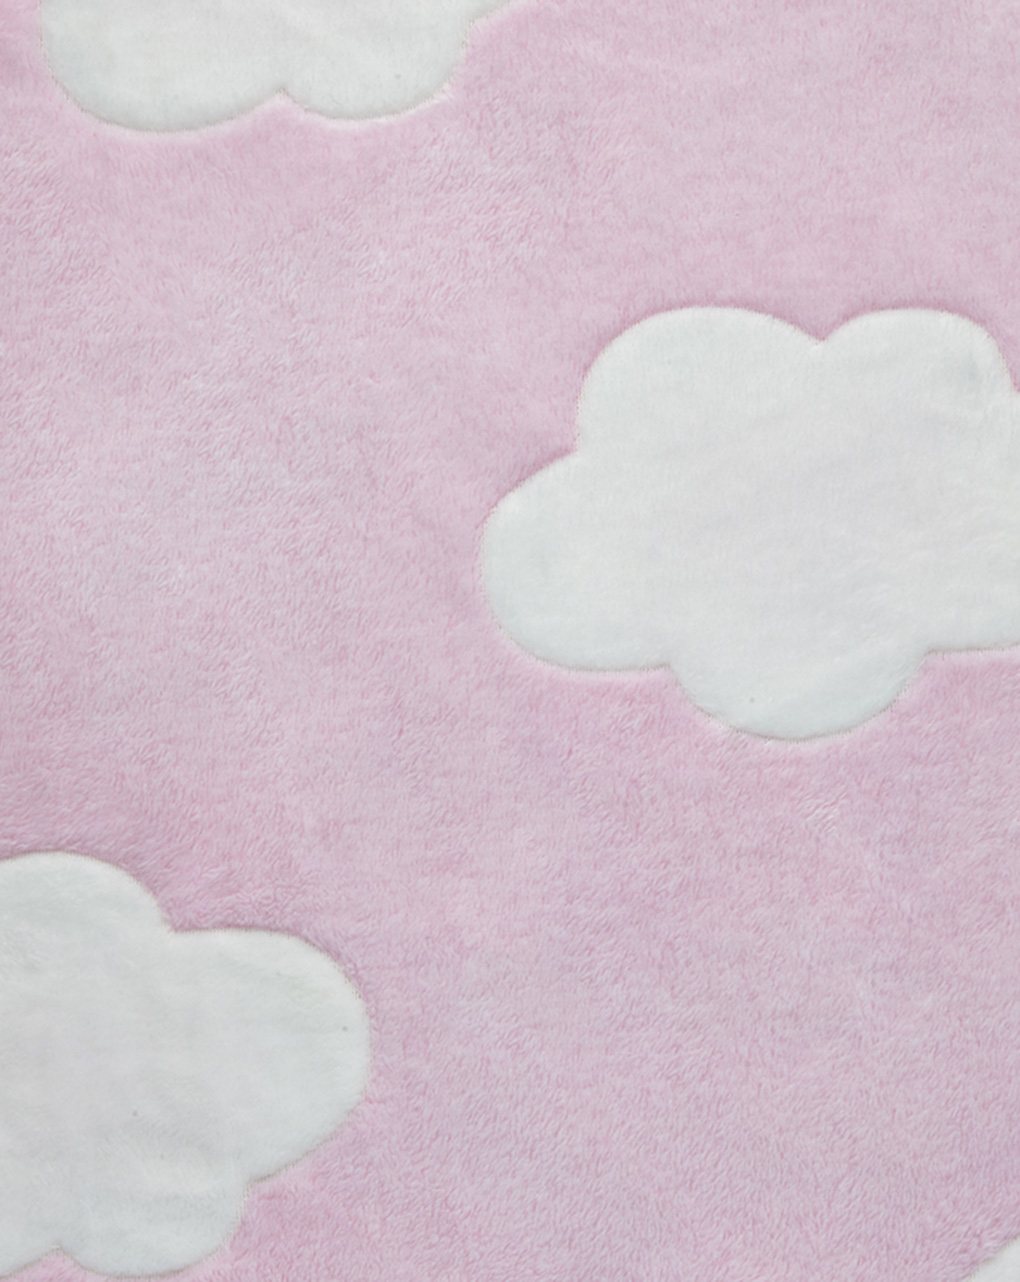 Colcha felpilla minicuna/capazo rosa con nubes blancas - Prénatal